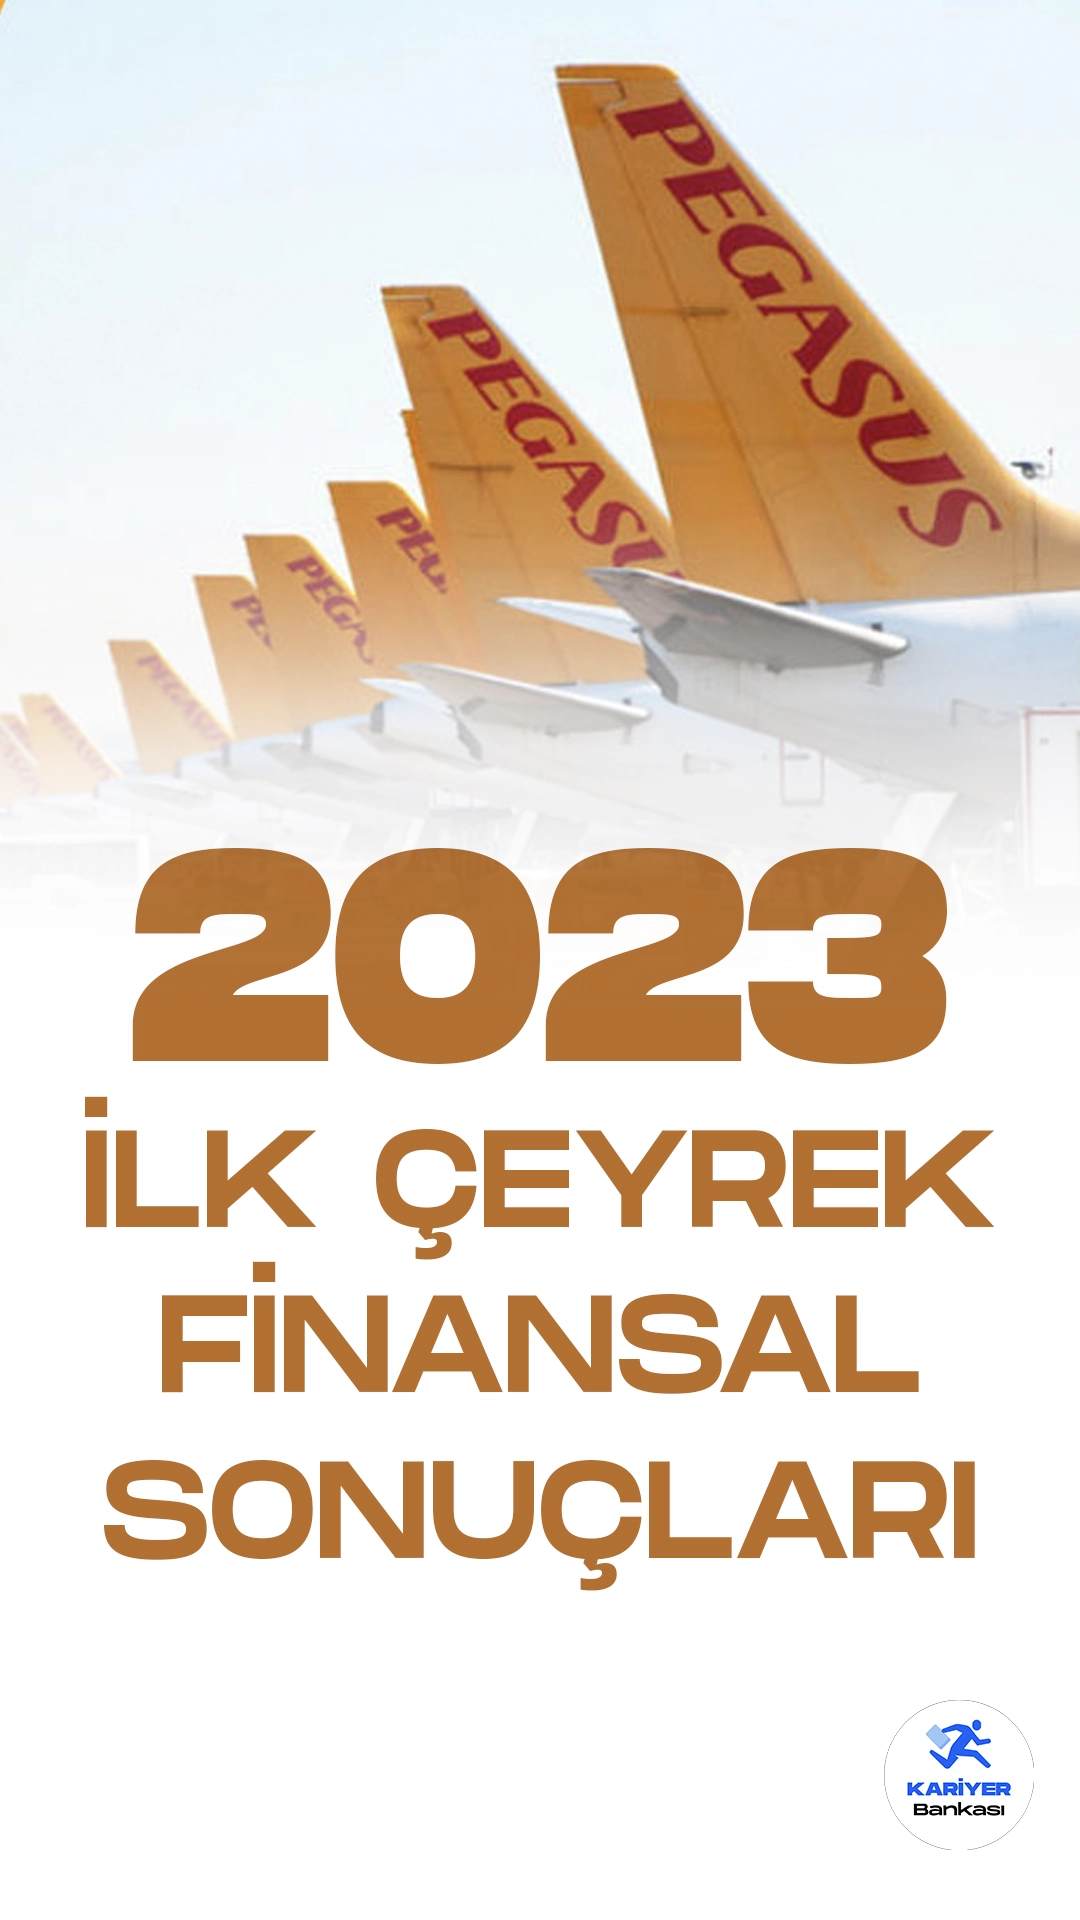 Türkiye'nin önde gelen hava yolu şirketi Pegasus, 2023 yılının ilk çeyrek finansal sonuçlarını açıkladı. Şirket, piyasa beklentilerinin üzerinde bir zarar bildirirken, döviz bazlı zararını 22 milyon euro olarak açıkladı.